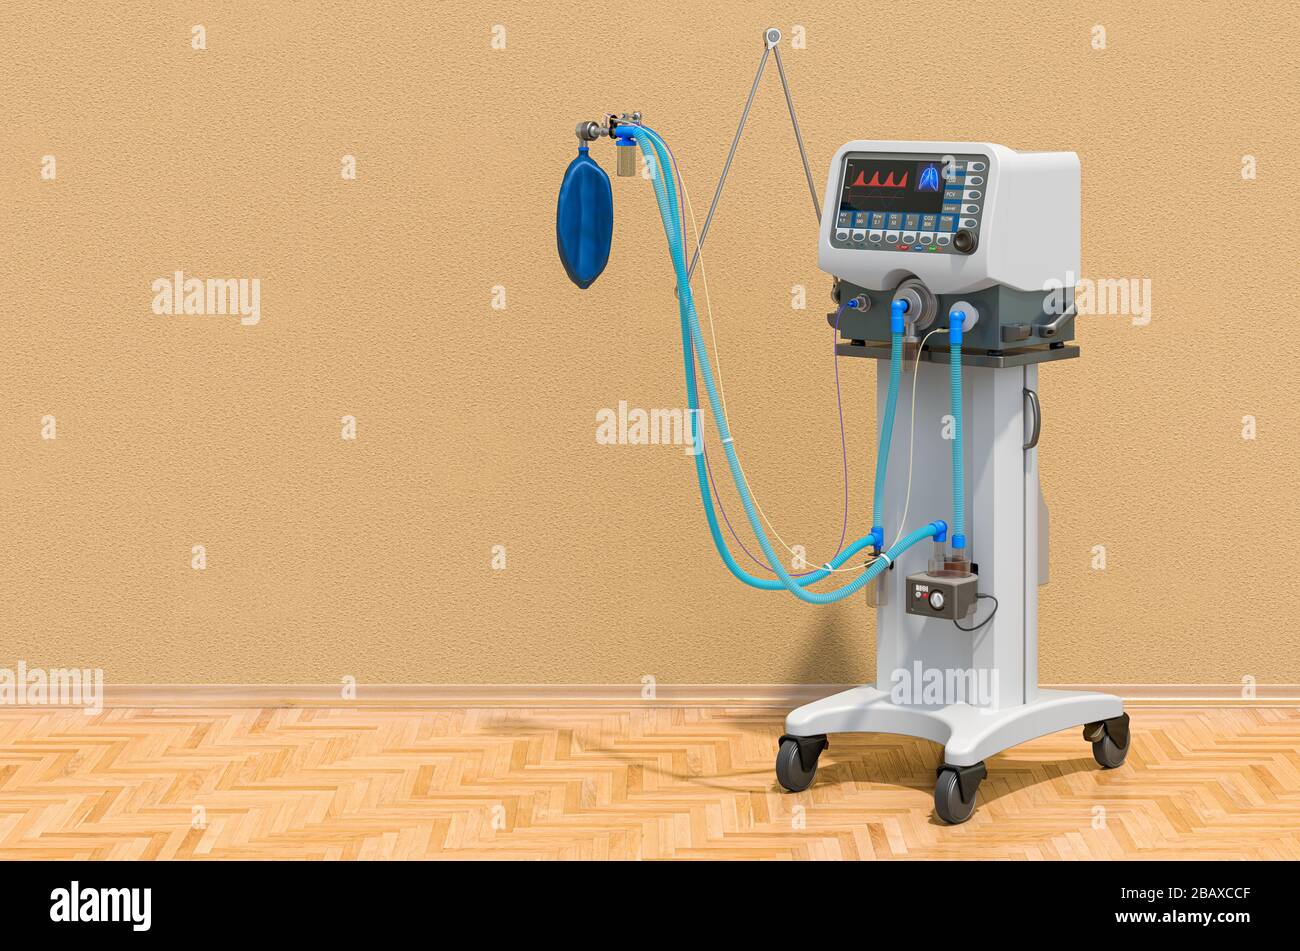 Medical ventilator in room on the wooden floor, 3D rendering Stock Photo